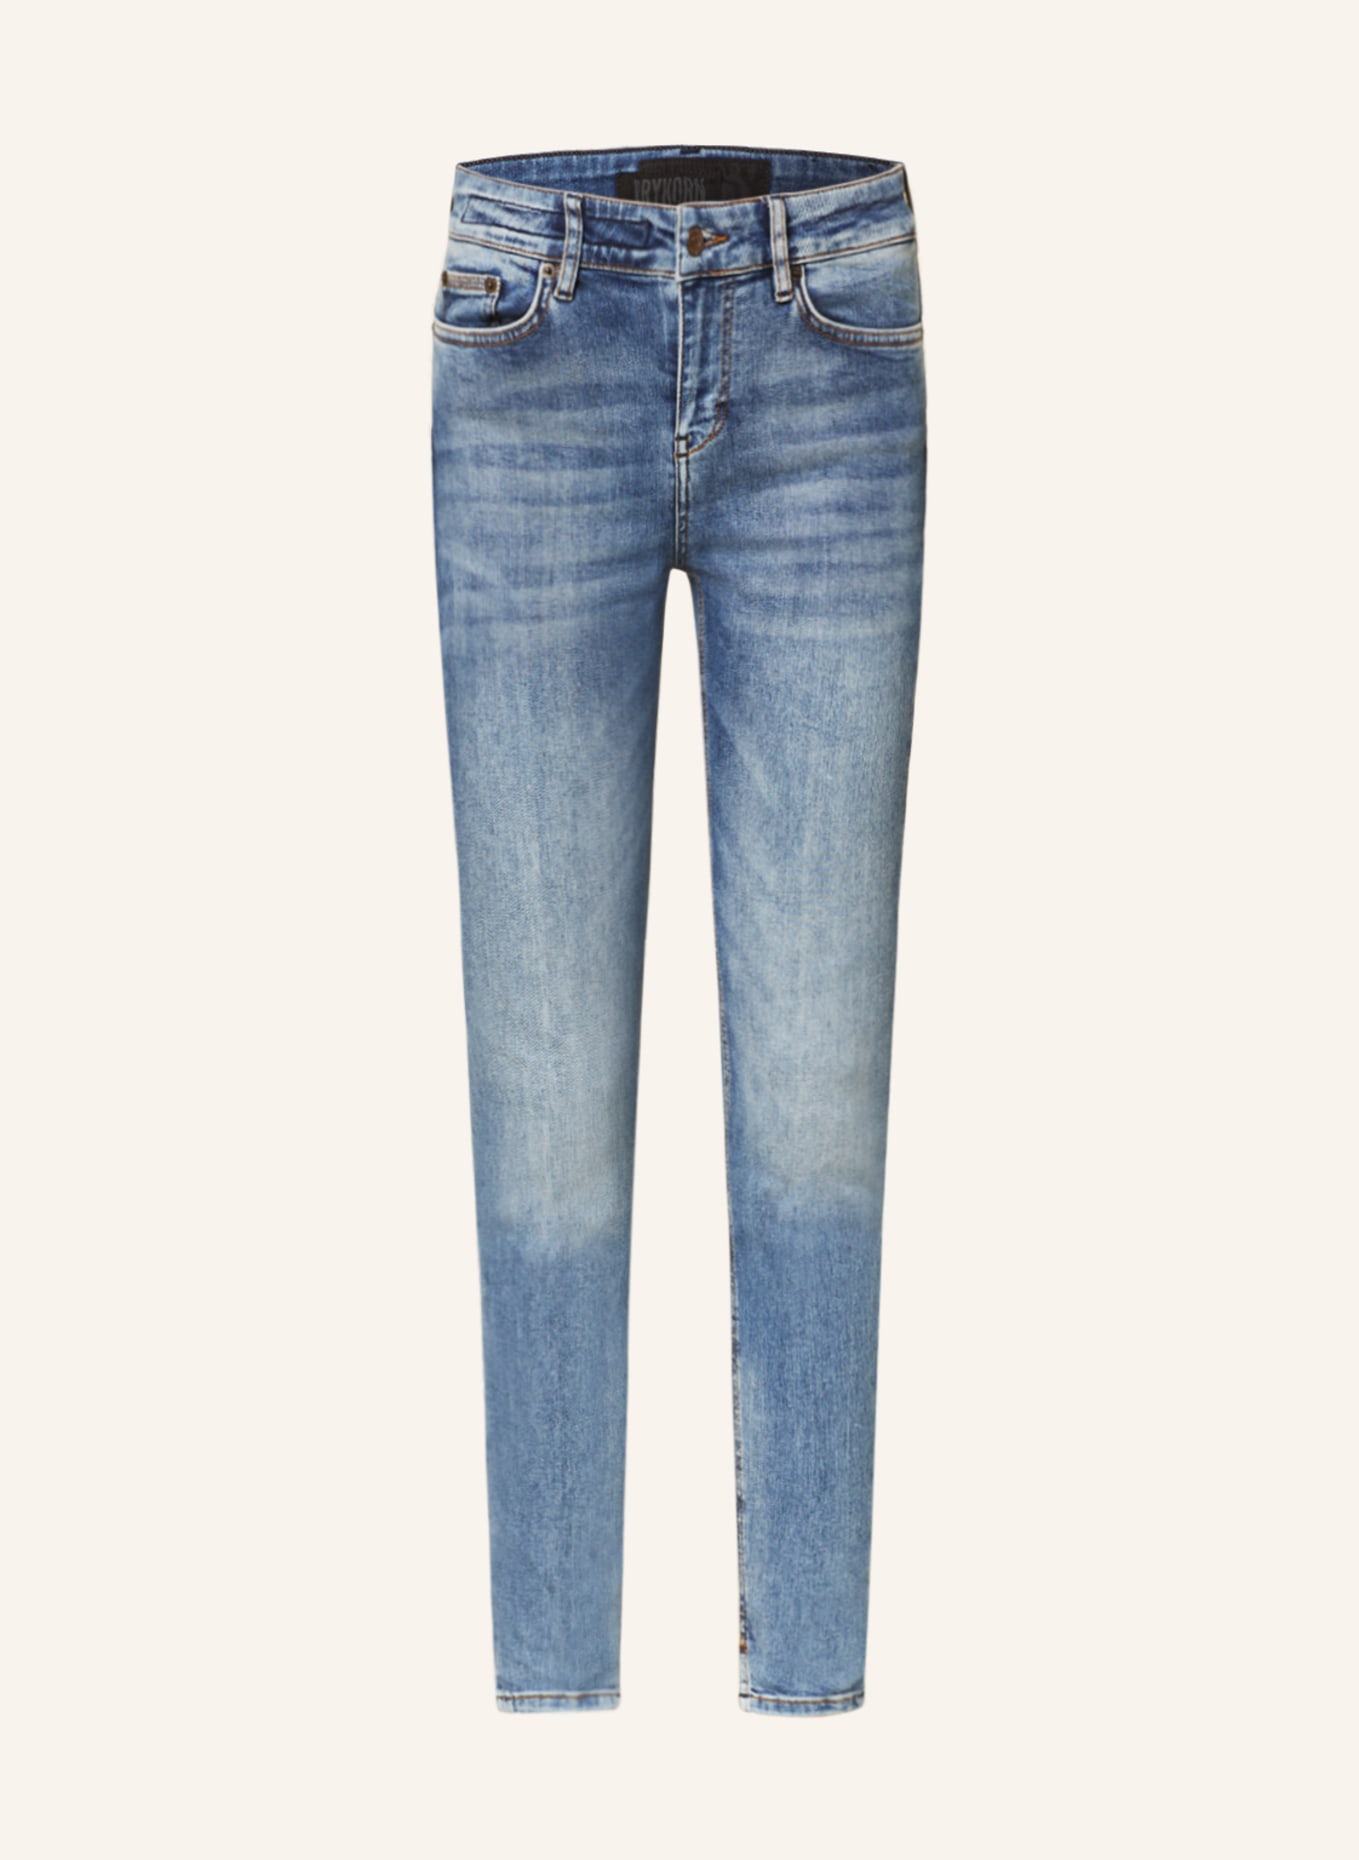 DRYKORN Skinny Jeans NEED, Farbe: 3400 blau (Bild 1)